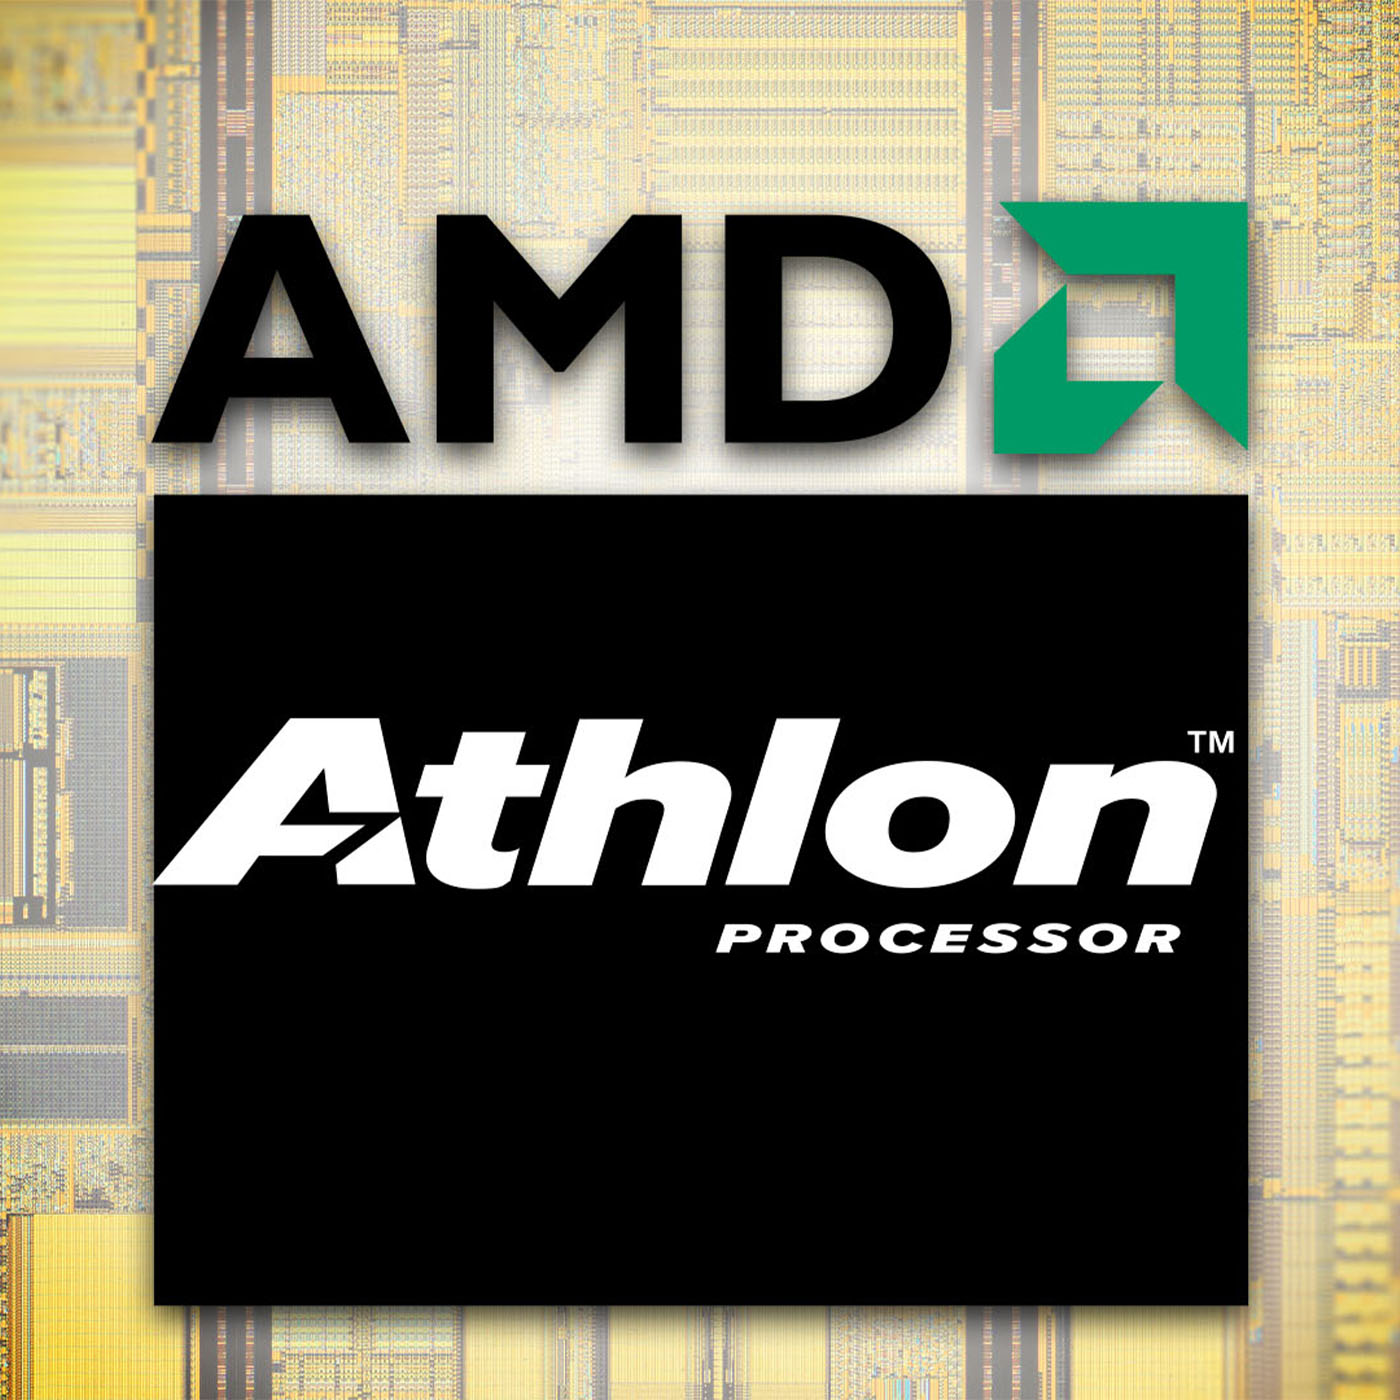 Der Chip, der AMD rettete